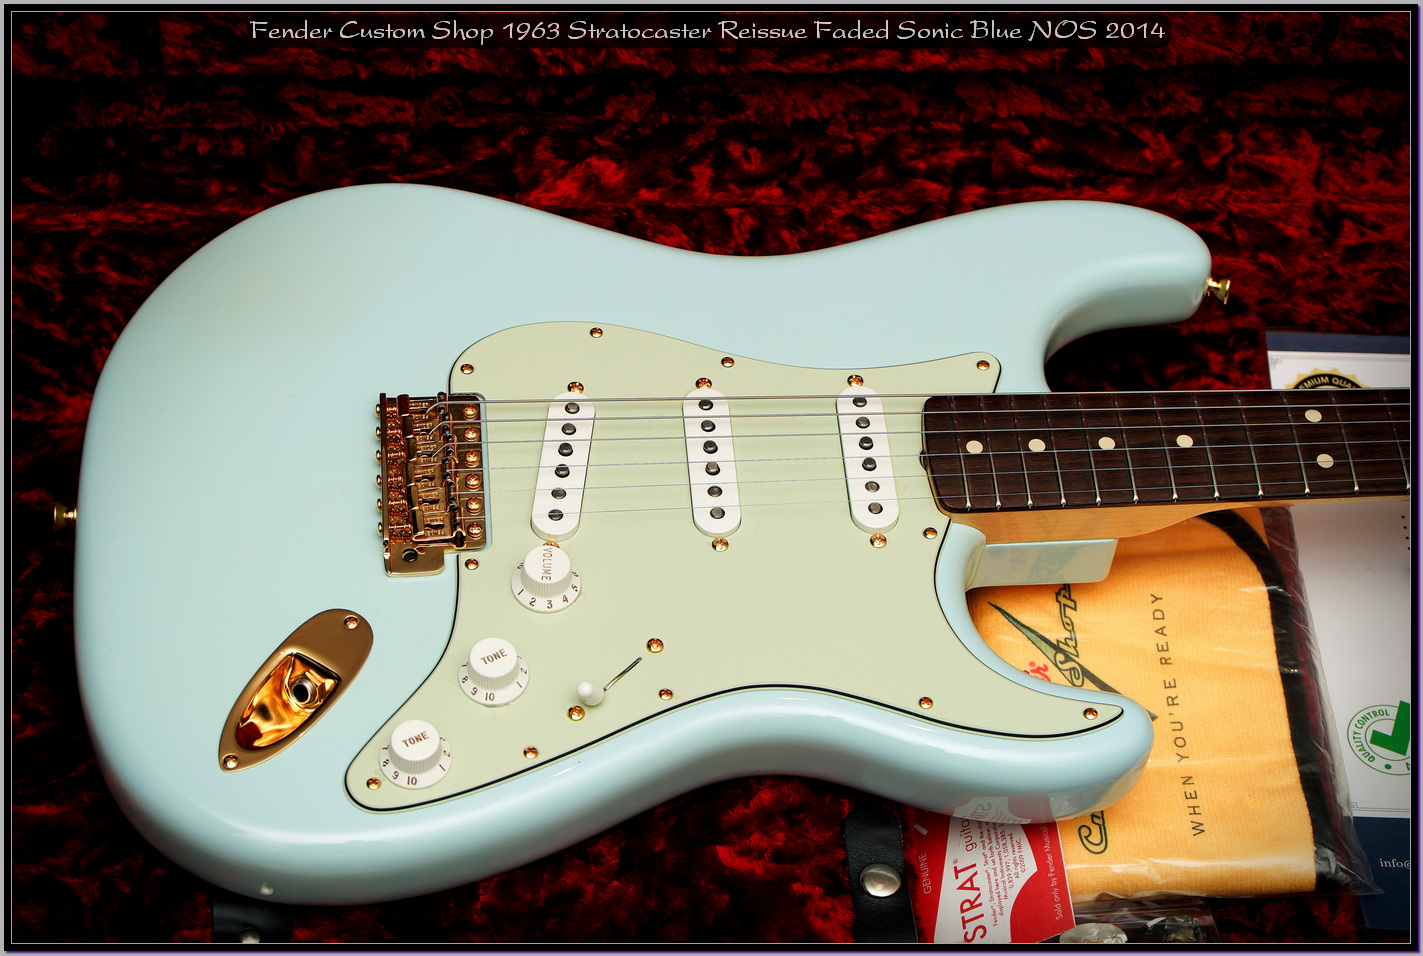 Fender Custom Shop 1963 Stratocaster Reissue Faded Sonic Blue NOS 2014 24_x1400.jpg